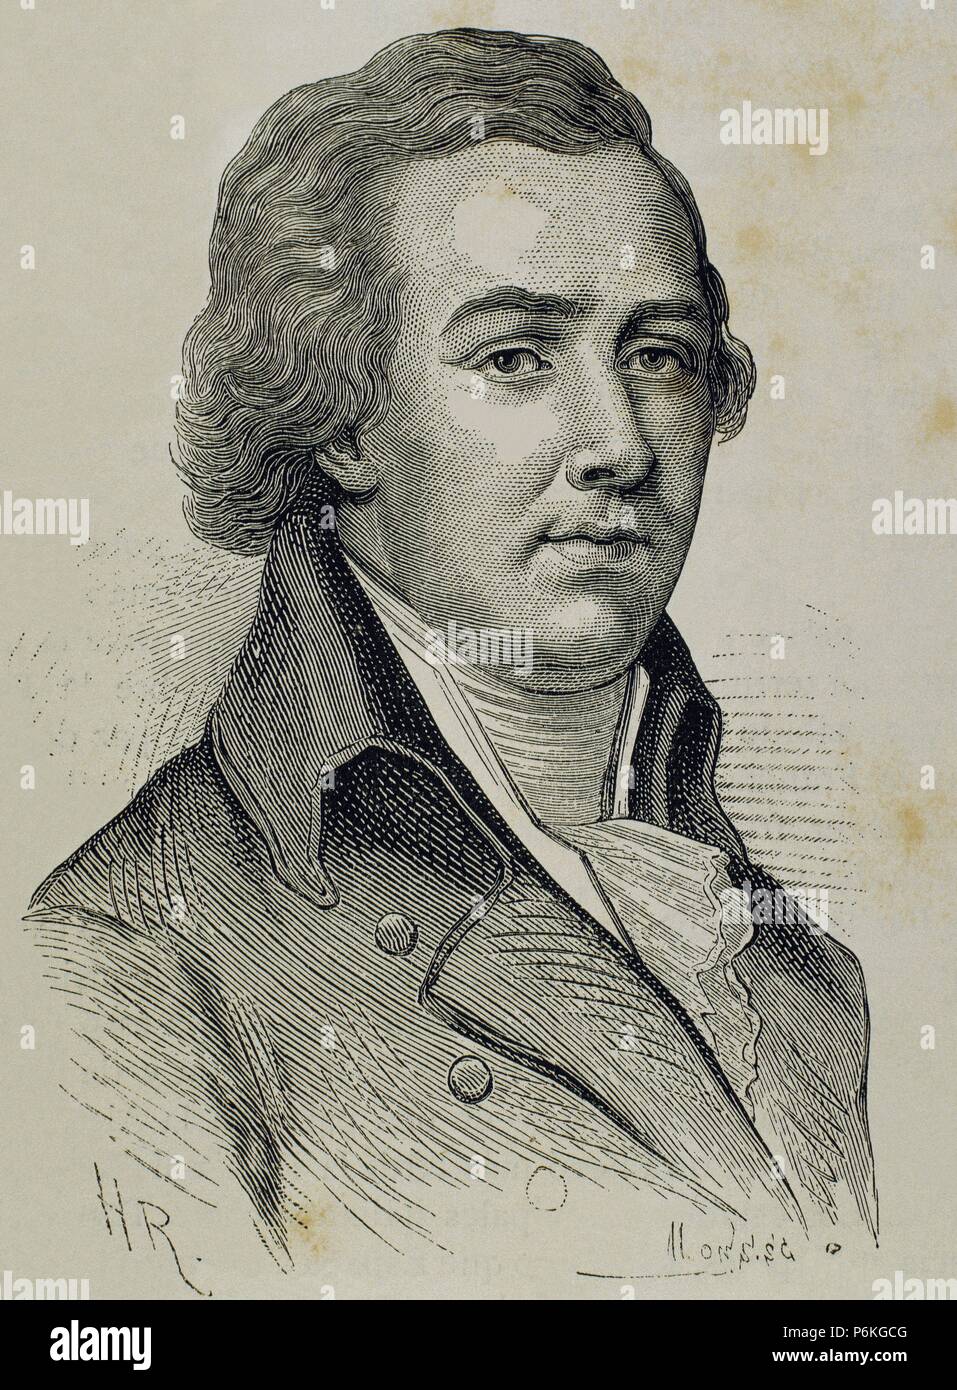 William Pitt, 1. Earl of Chatham (1708-1778). Britischer Staatsmann der Whig-Gruppe. Gravur. Porträt. Stockfoto